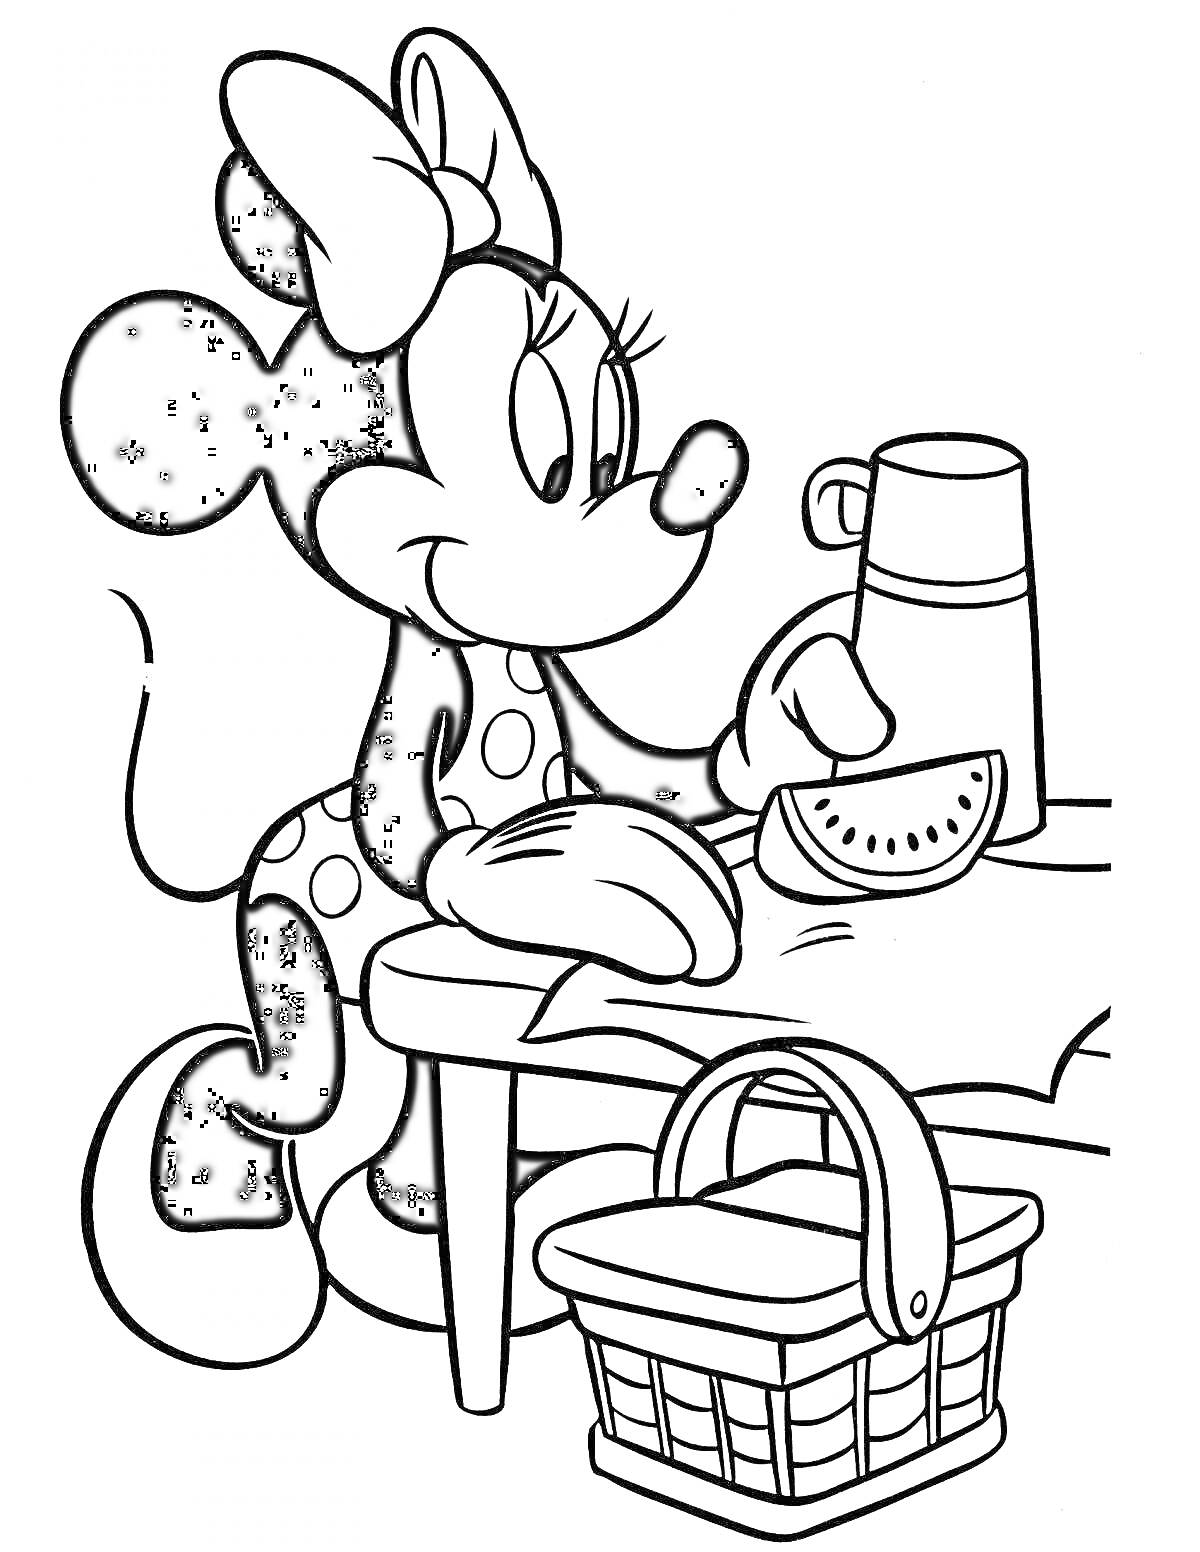 Раскраска Микки Маус на пикнике с арбузом, столом и корзиной для пикника